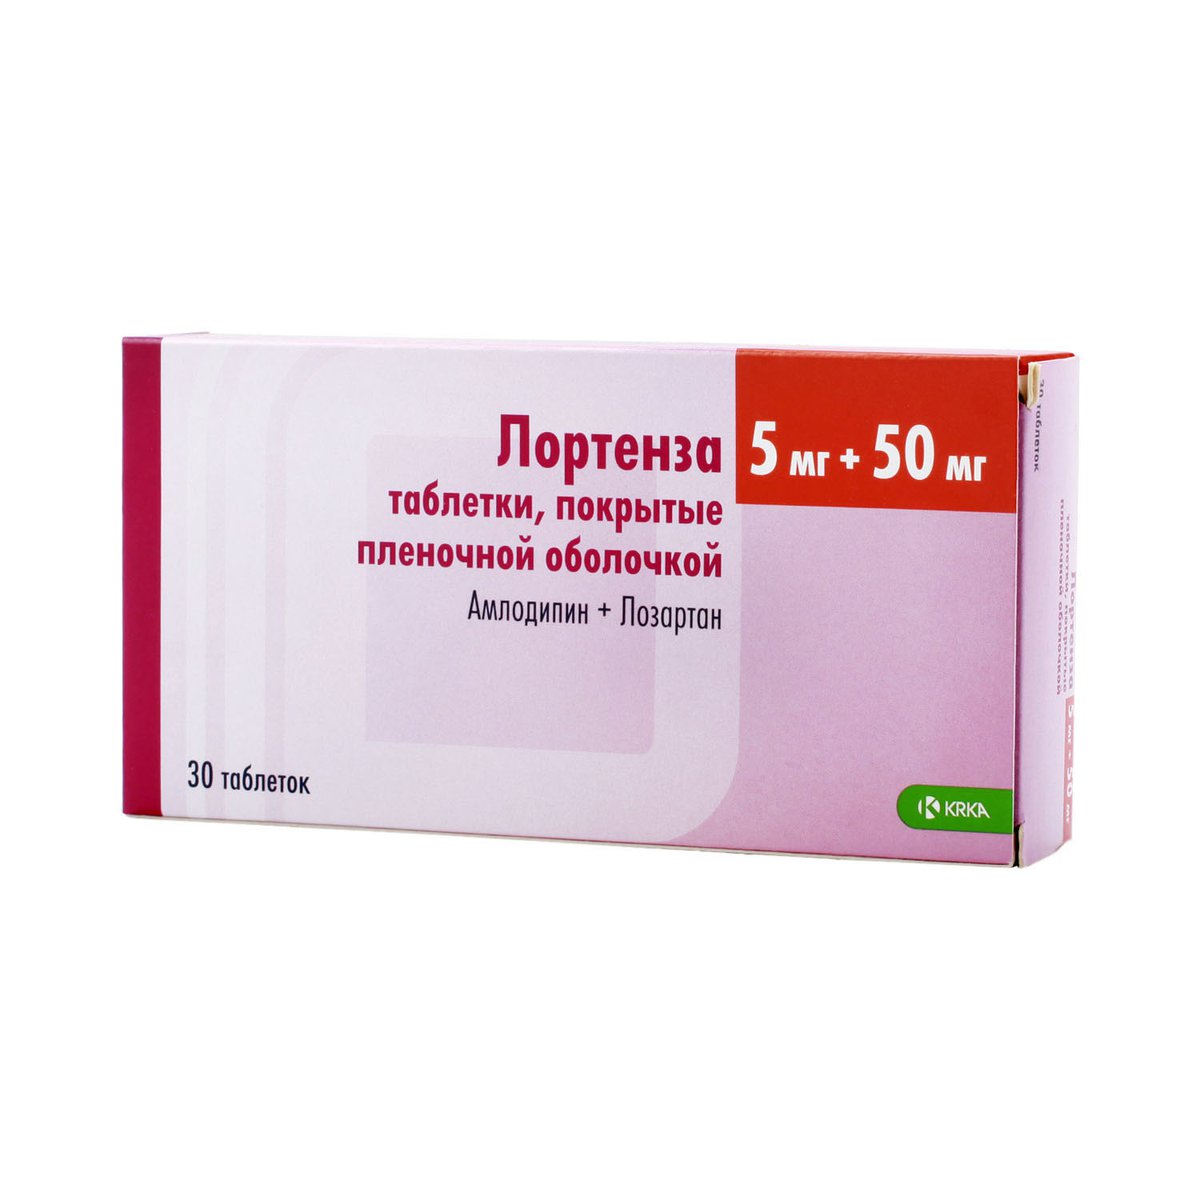 Лортенза (таблетки, 30 шт, 5 + 50 мг) - цена,  онлайн  .